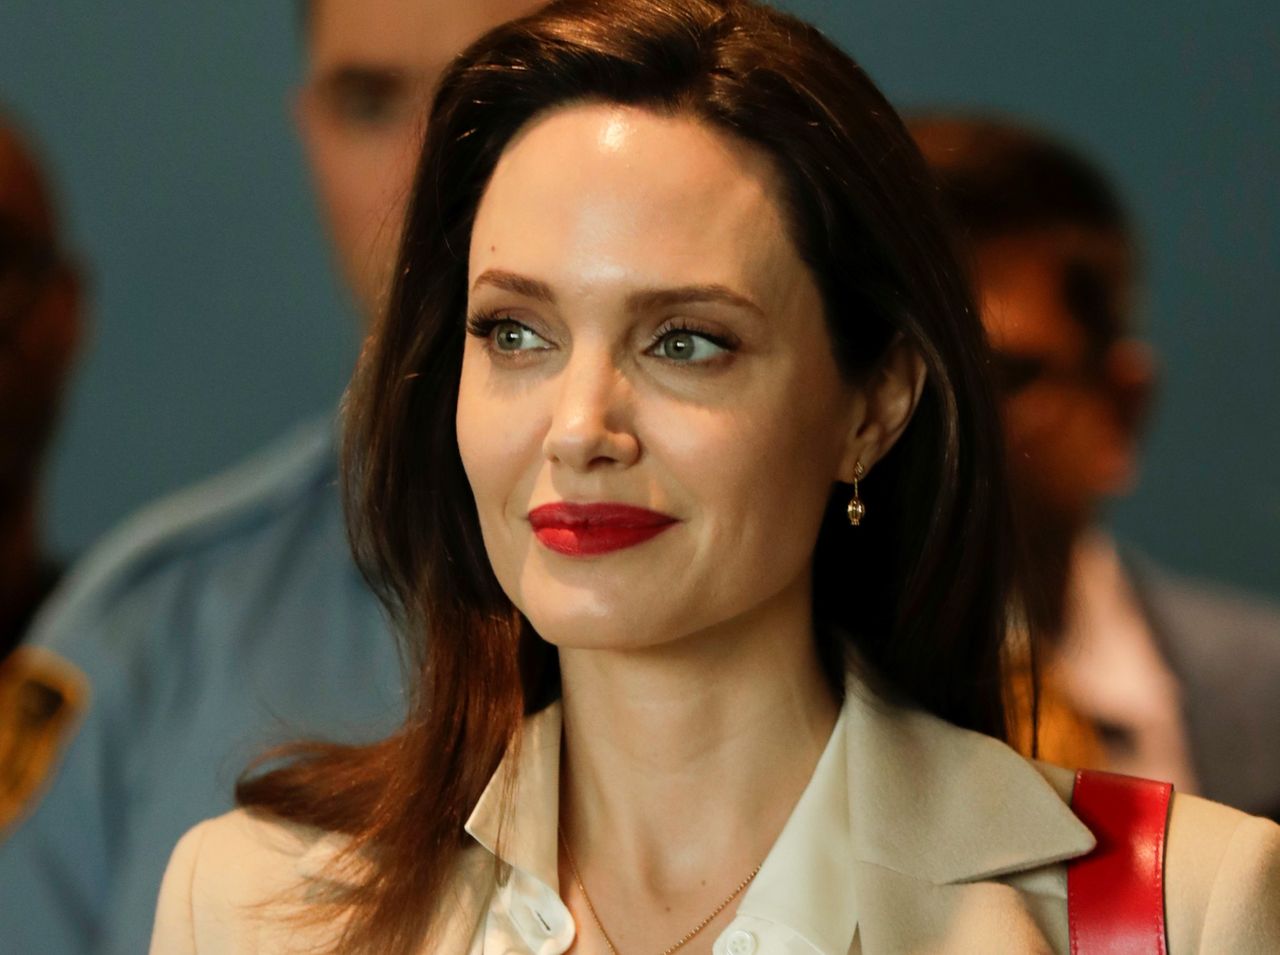 Angelina Jolie odprowadziła syna na uniwersytet. Maddox zaczyna studia